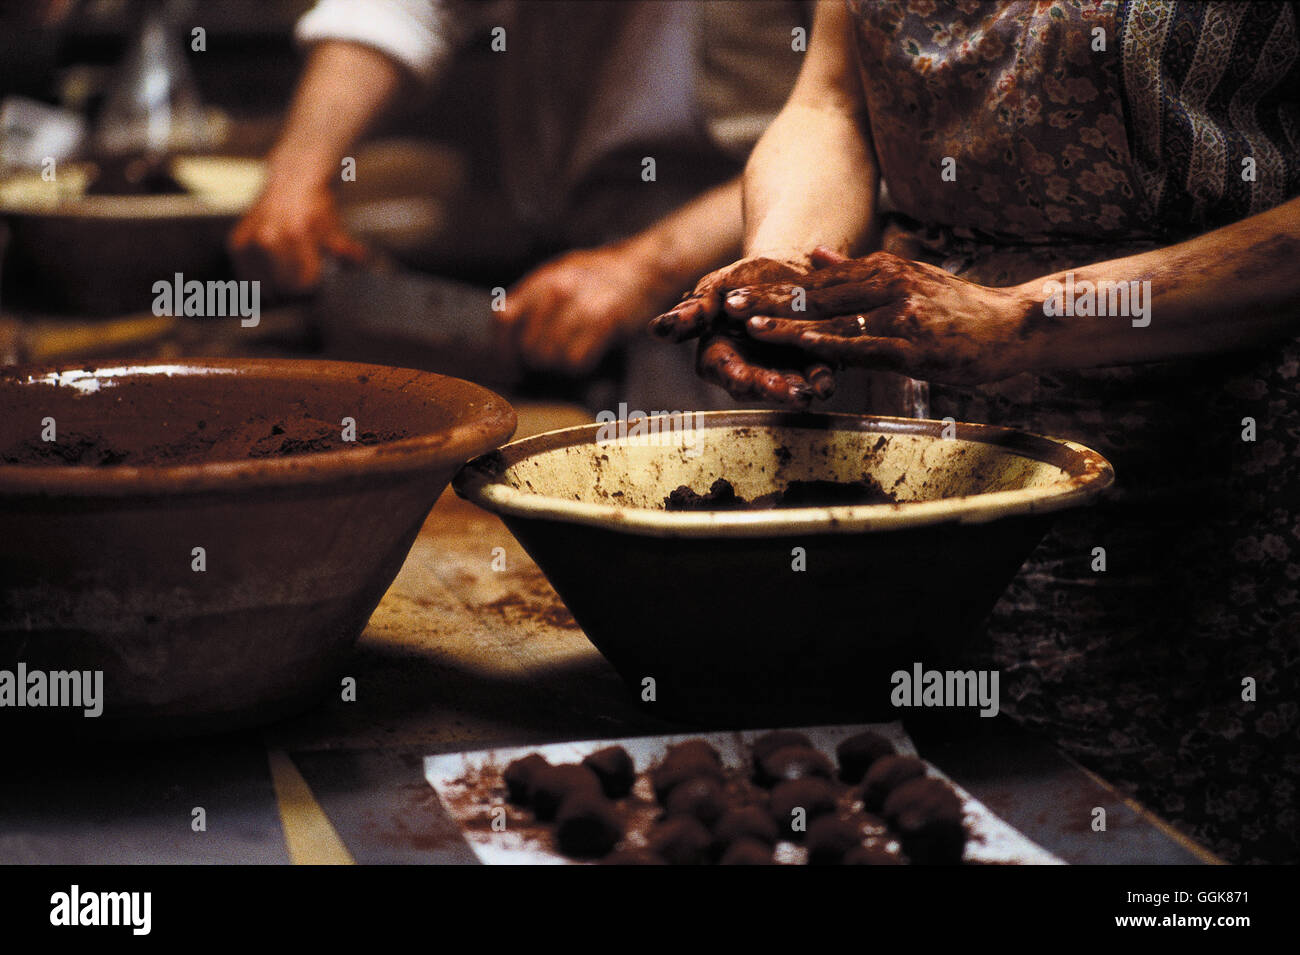 CHOCOLAT - EIN KLEINER BISS GENÜGT / Chocolat USA/GB 2000 / Lasse Hallström Szene: Die Hände von Juliette Binoche beim Zubereiten von Schokolade Regie: Lasse Hallstrm aka. Chocolat Stock Photo